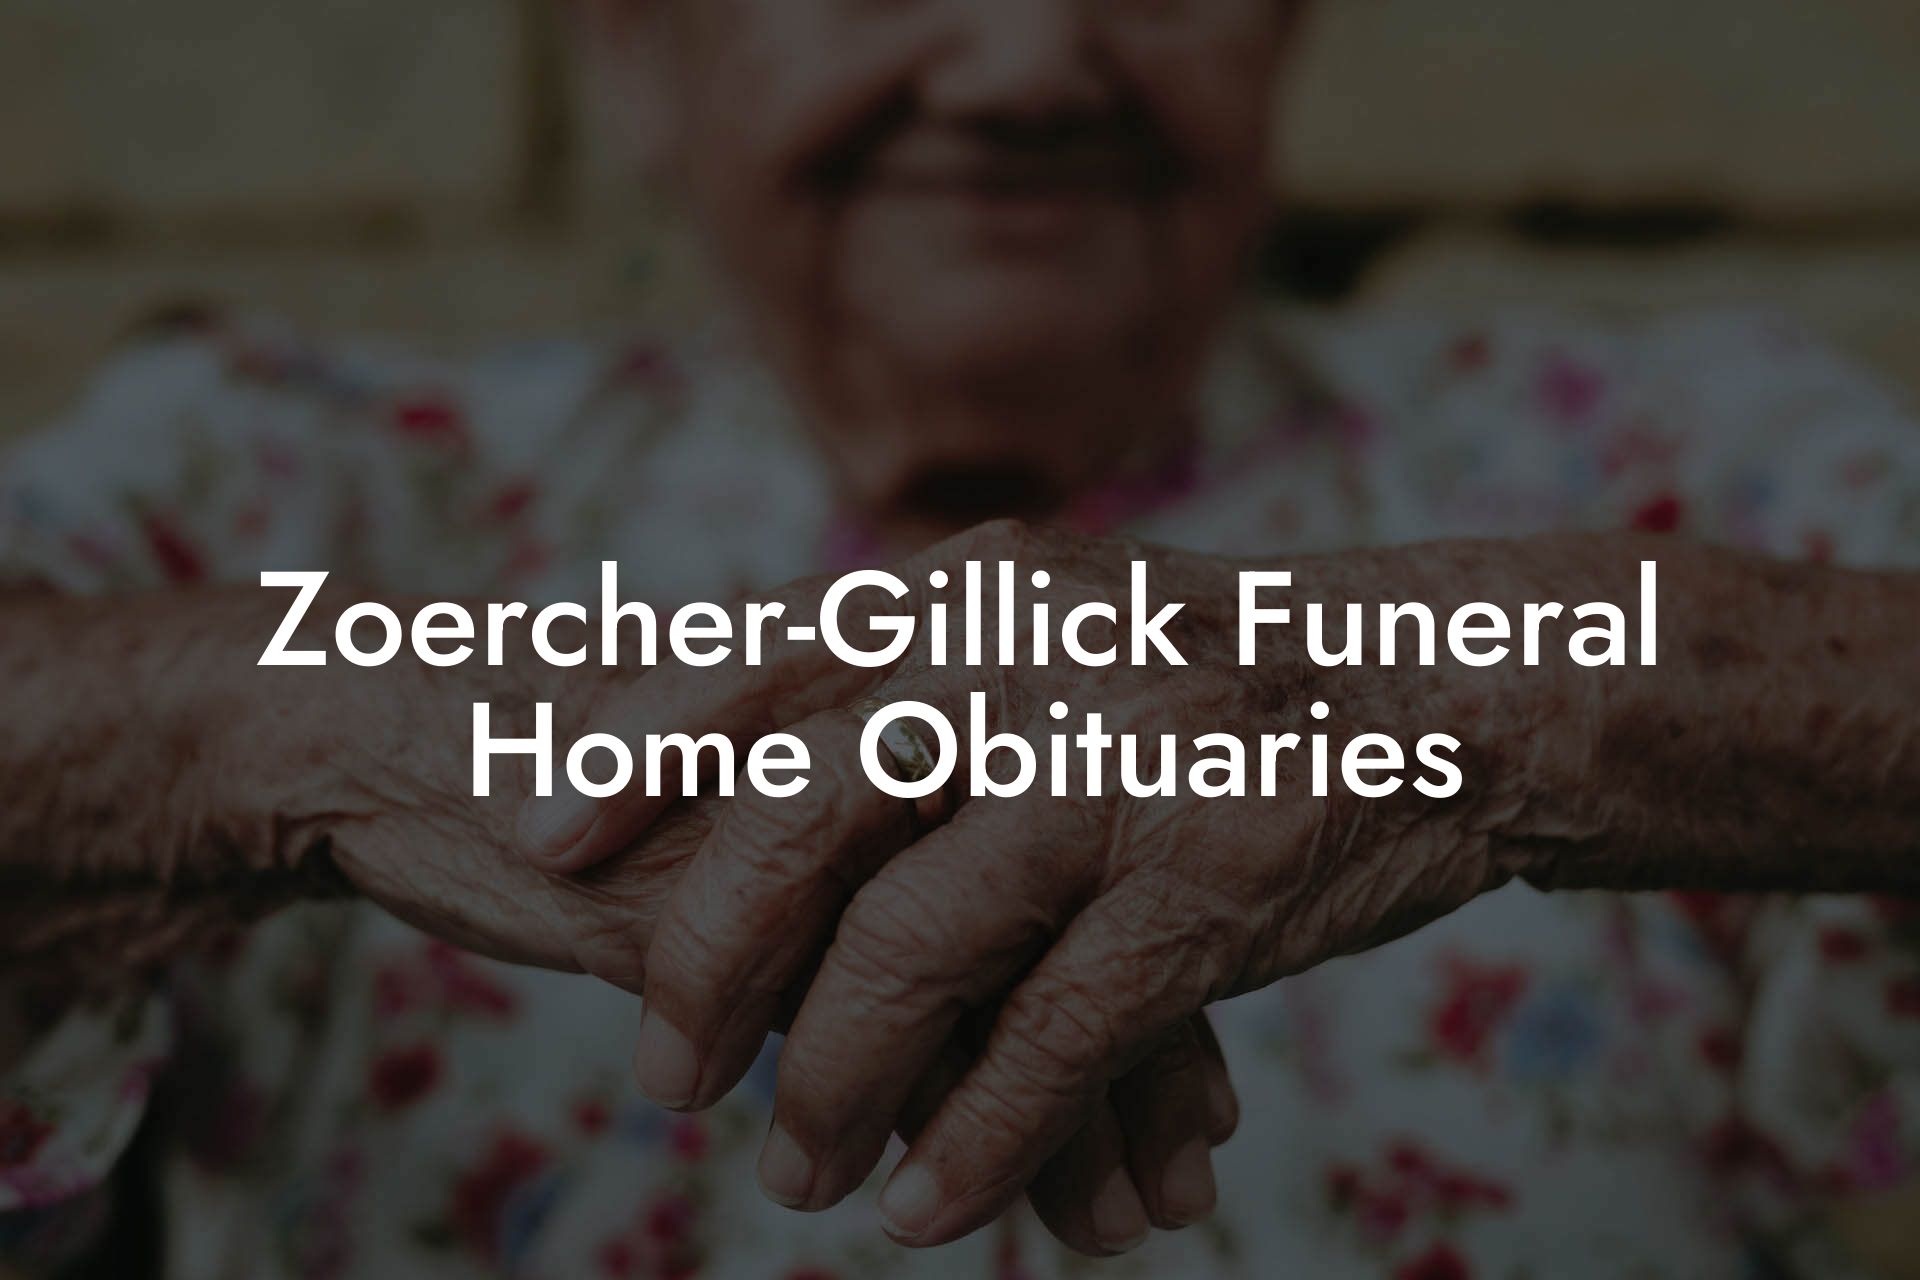 Zoercher-Gillick Funeral Home Obituaries